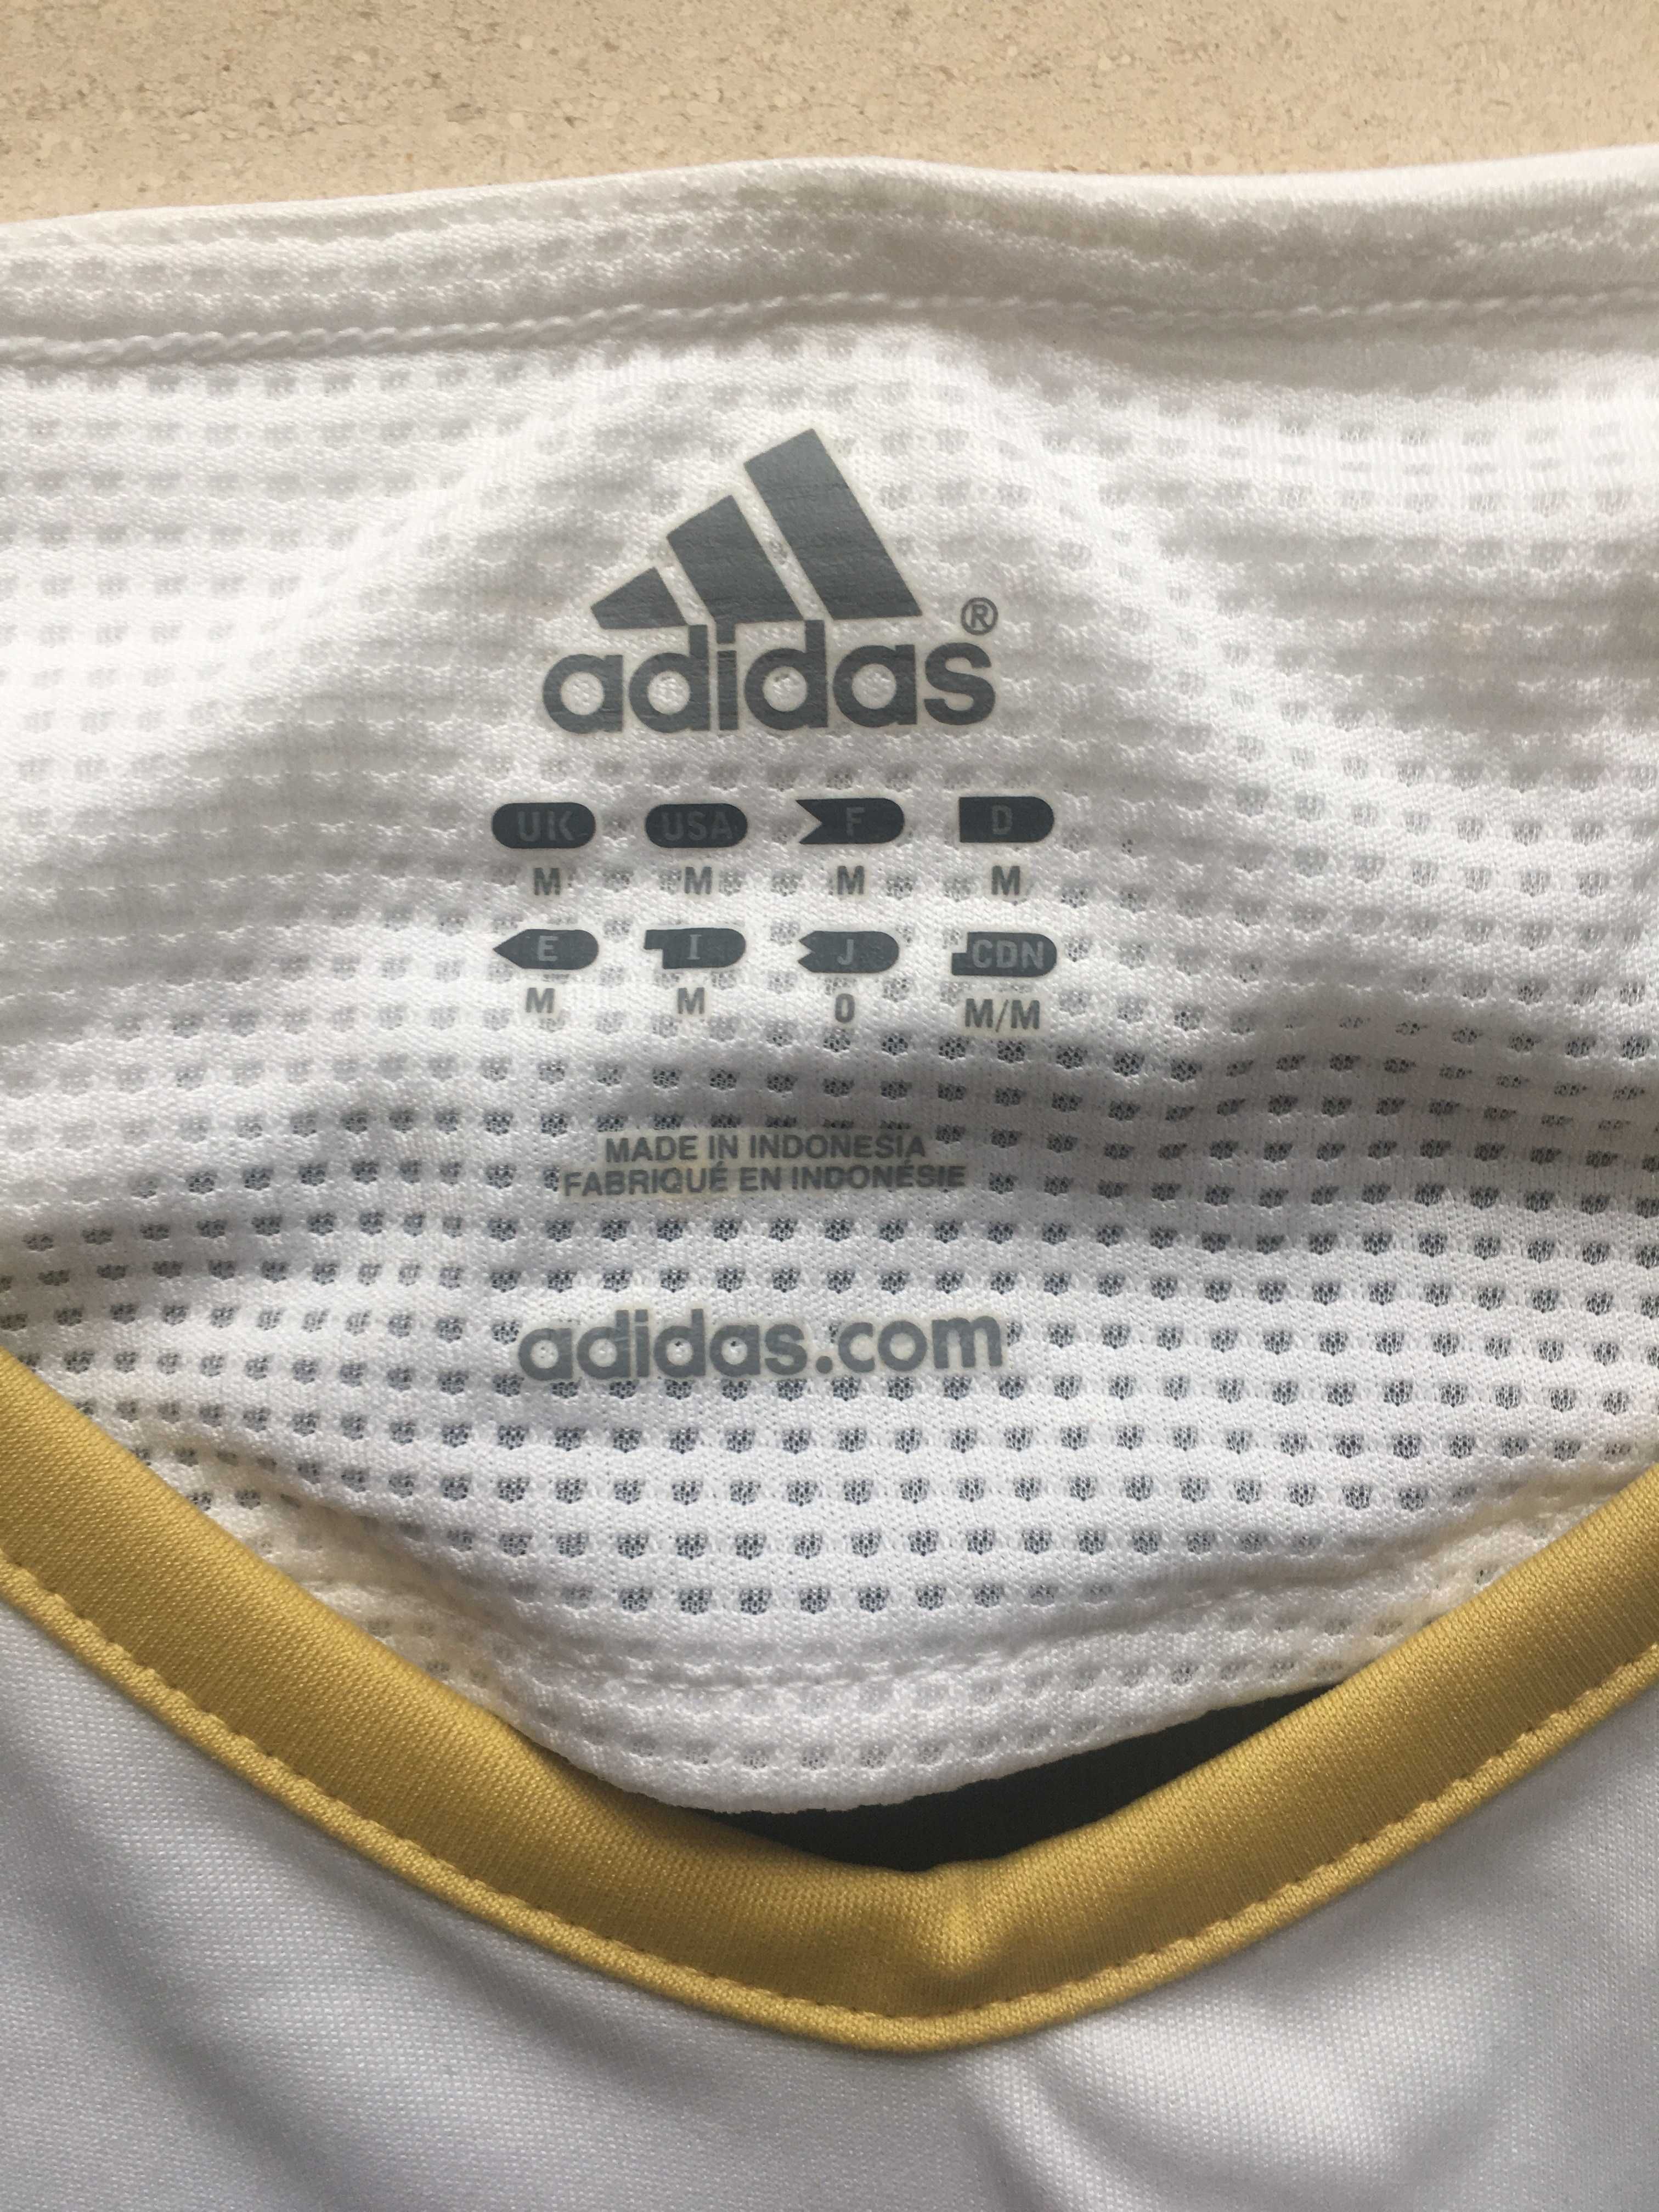 Camisola Adidas Futebol - tecnologia "Formotion"